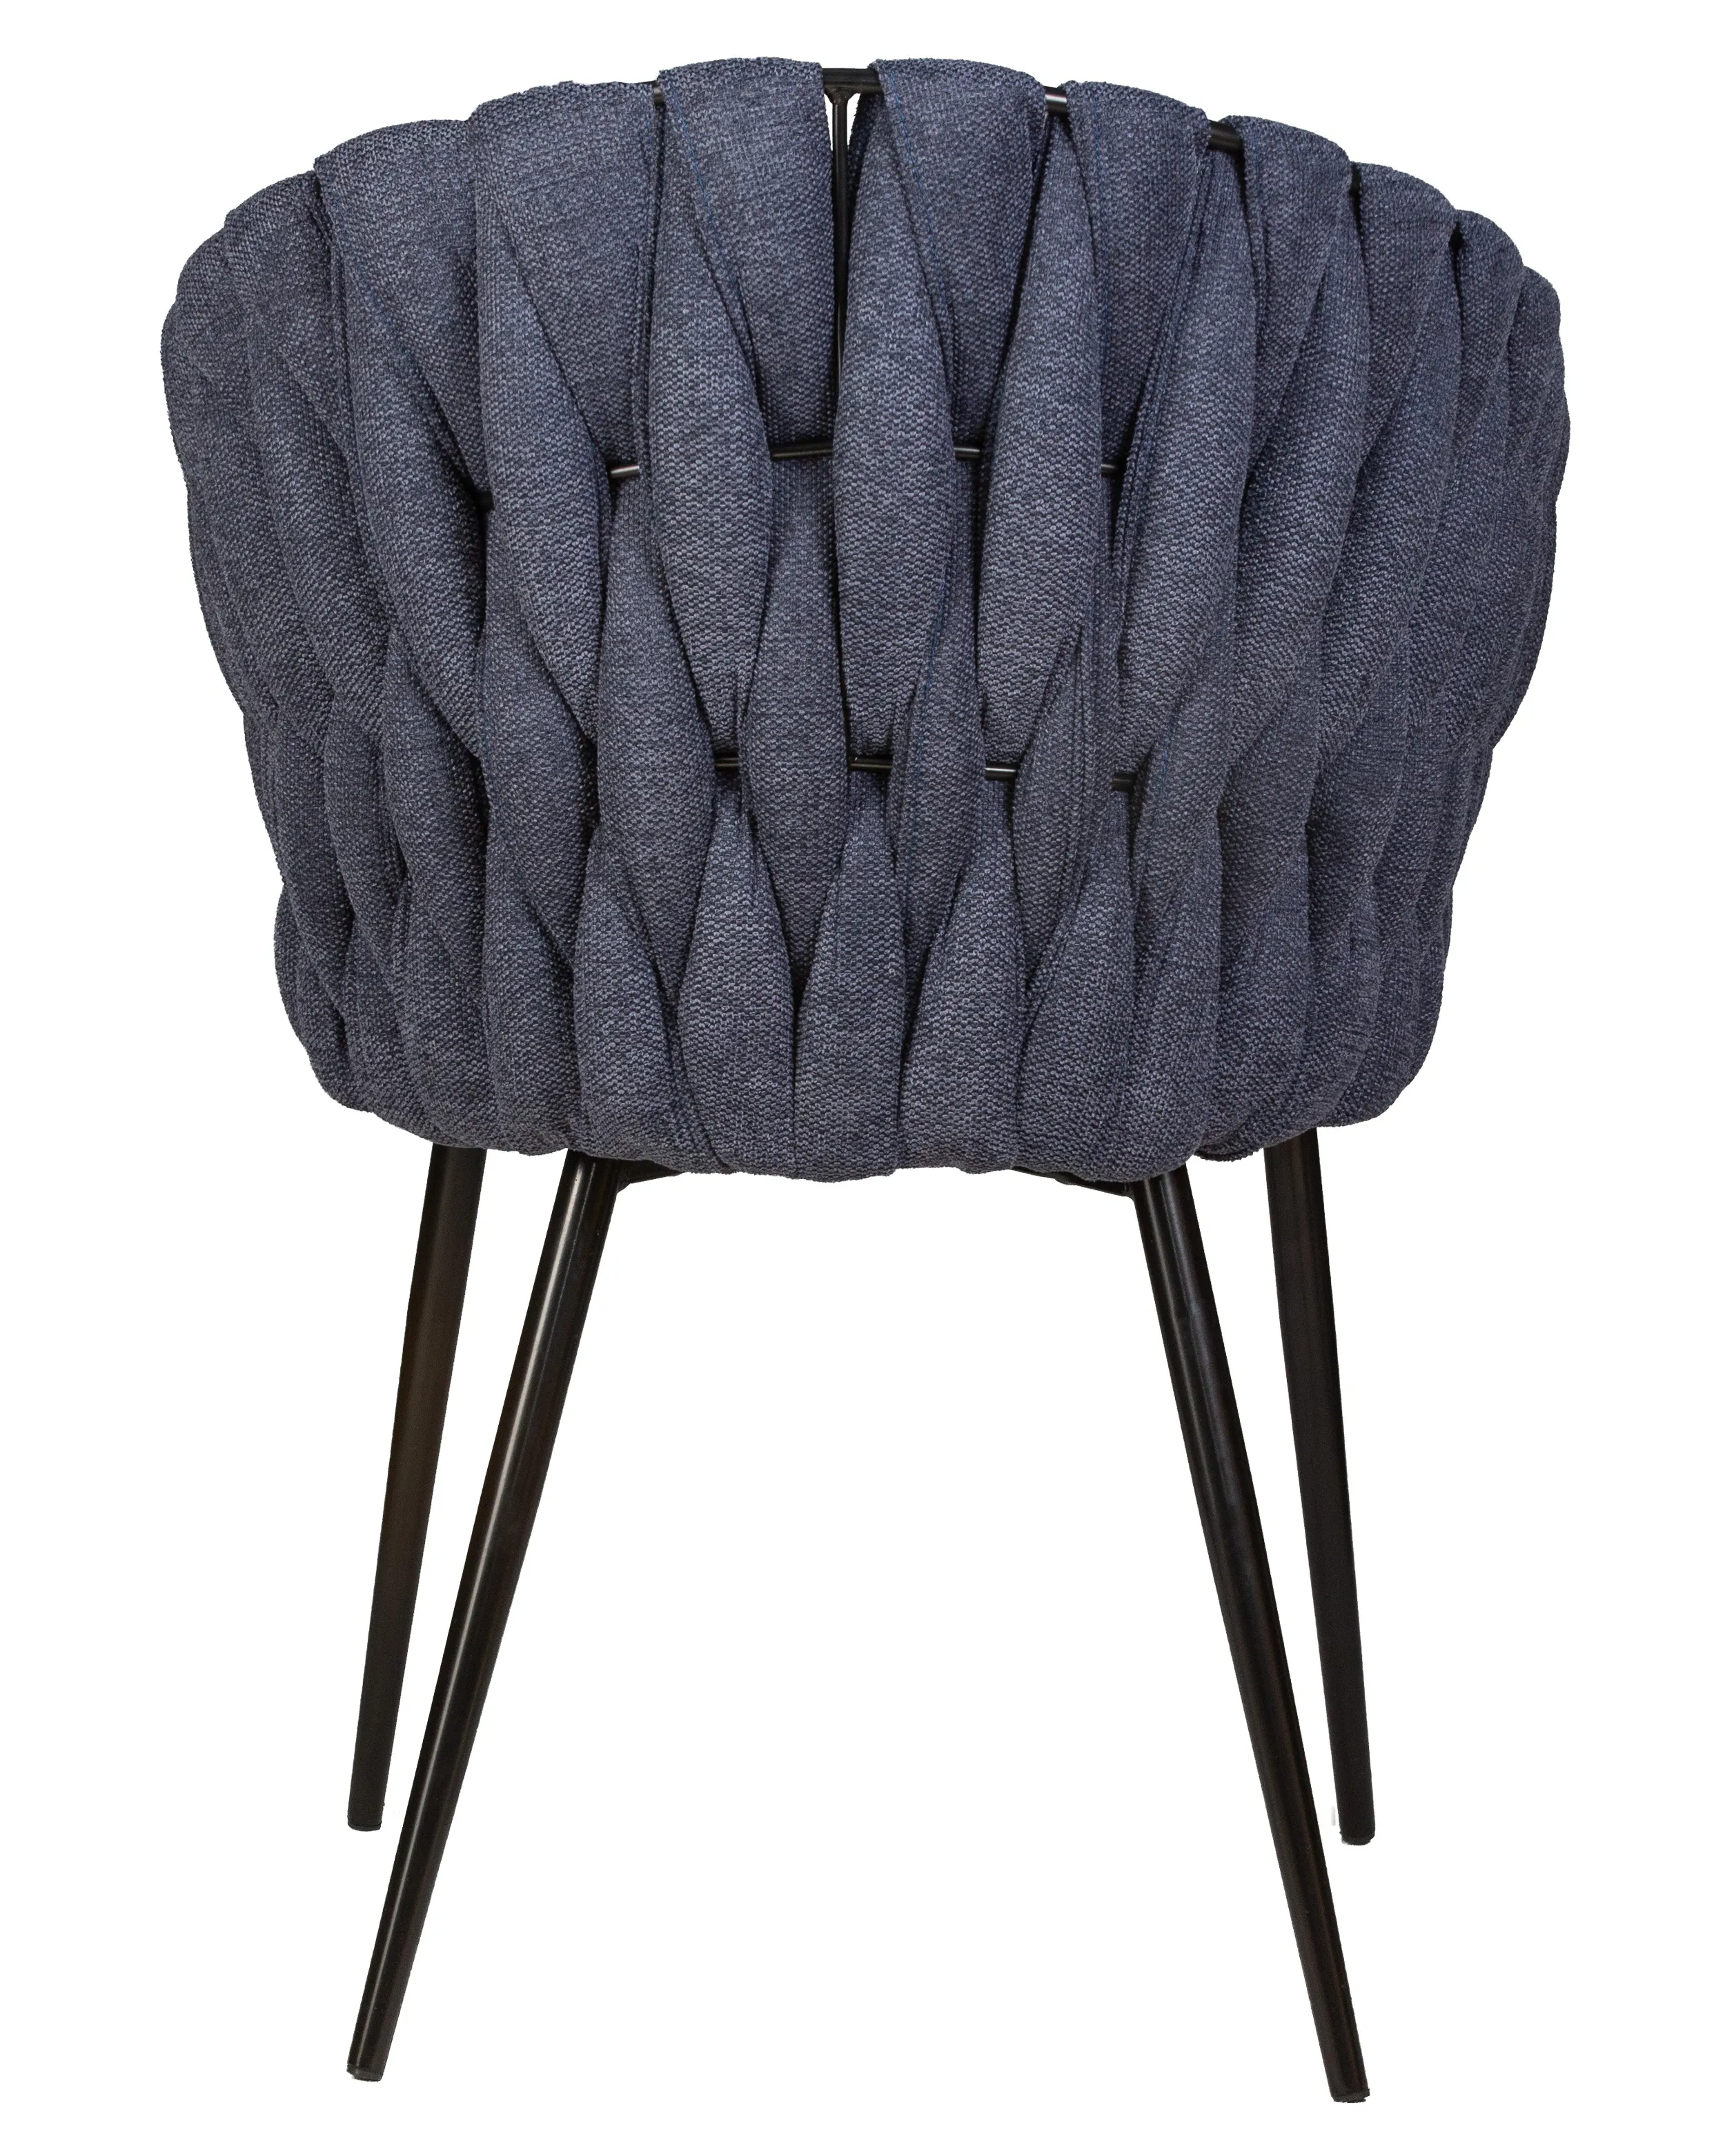 Стул-кресло DOBRIN MATILDA синяя ткань LAR-275-29